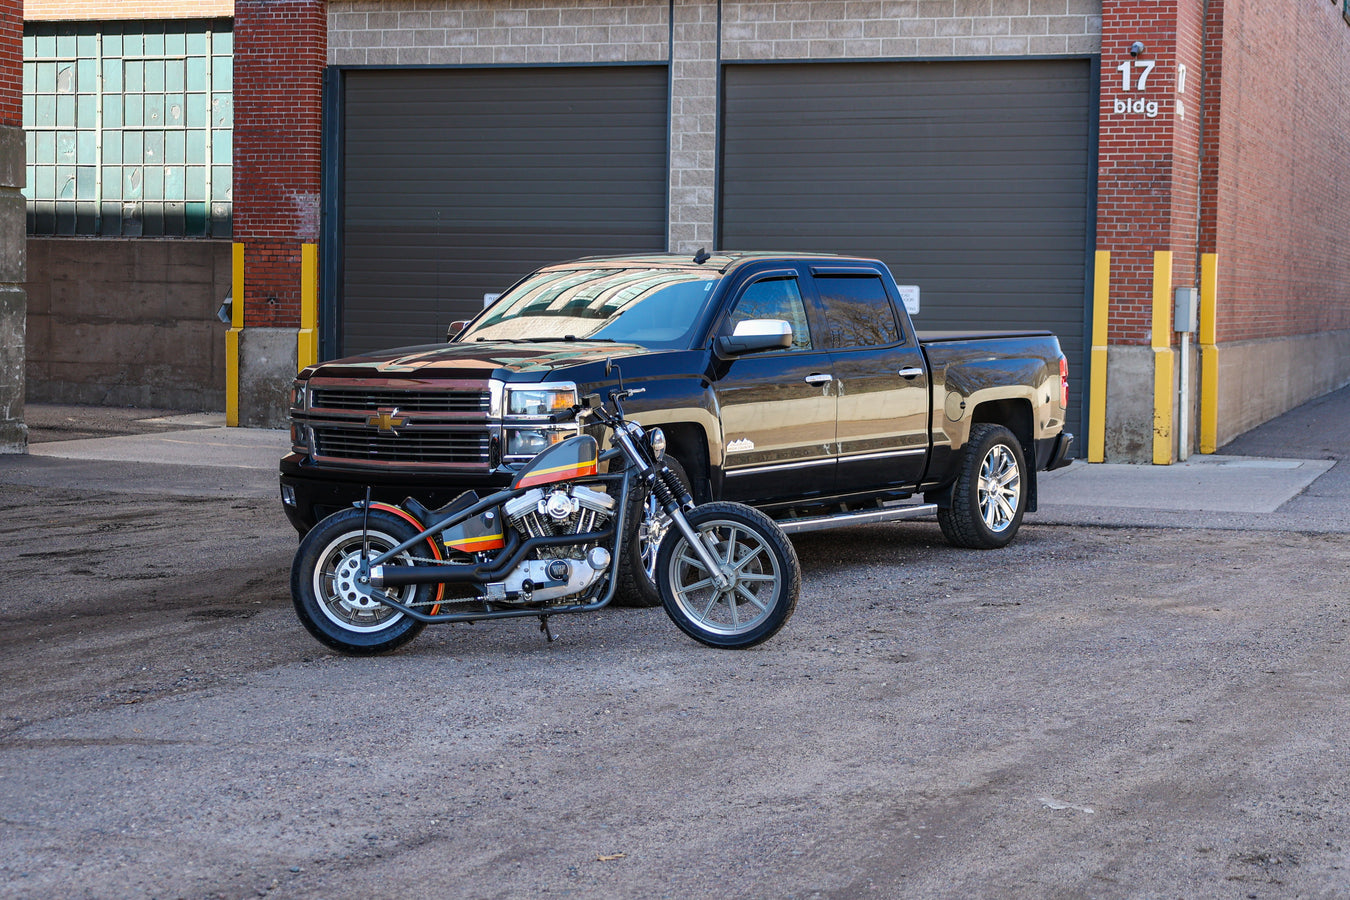 Truck and bike in front of garage doors